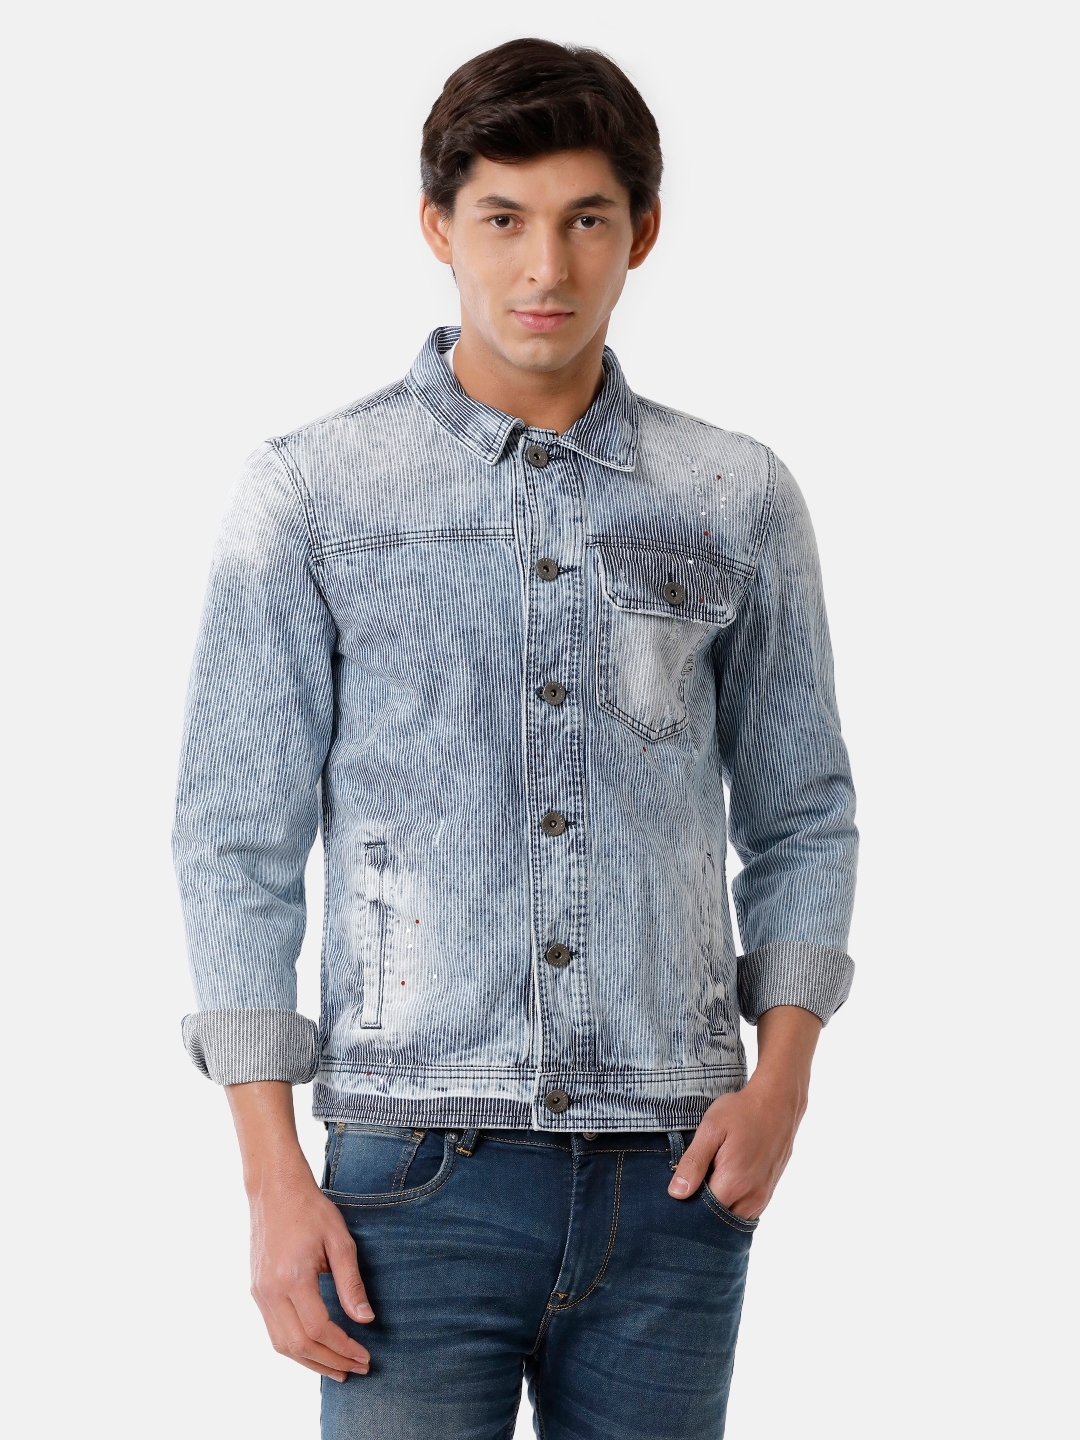 Voi Jeans | VOI Jeans Men's Light Blue 100% Cotton Striped Denim Jacket